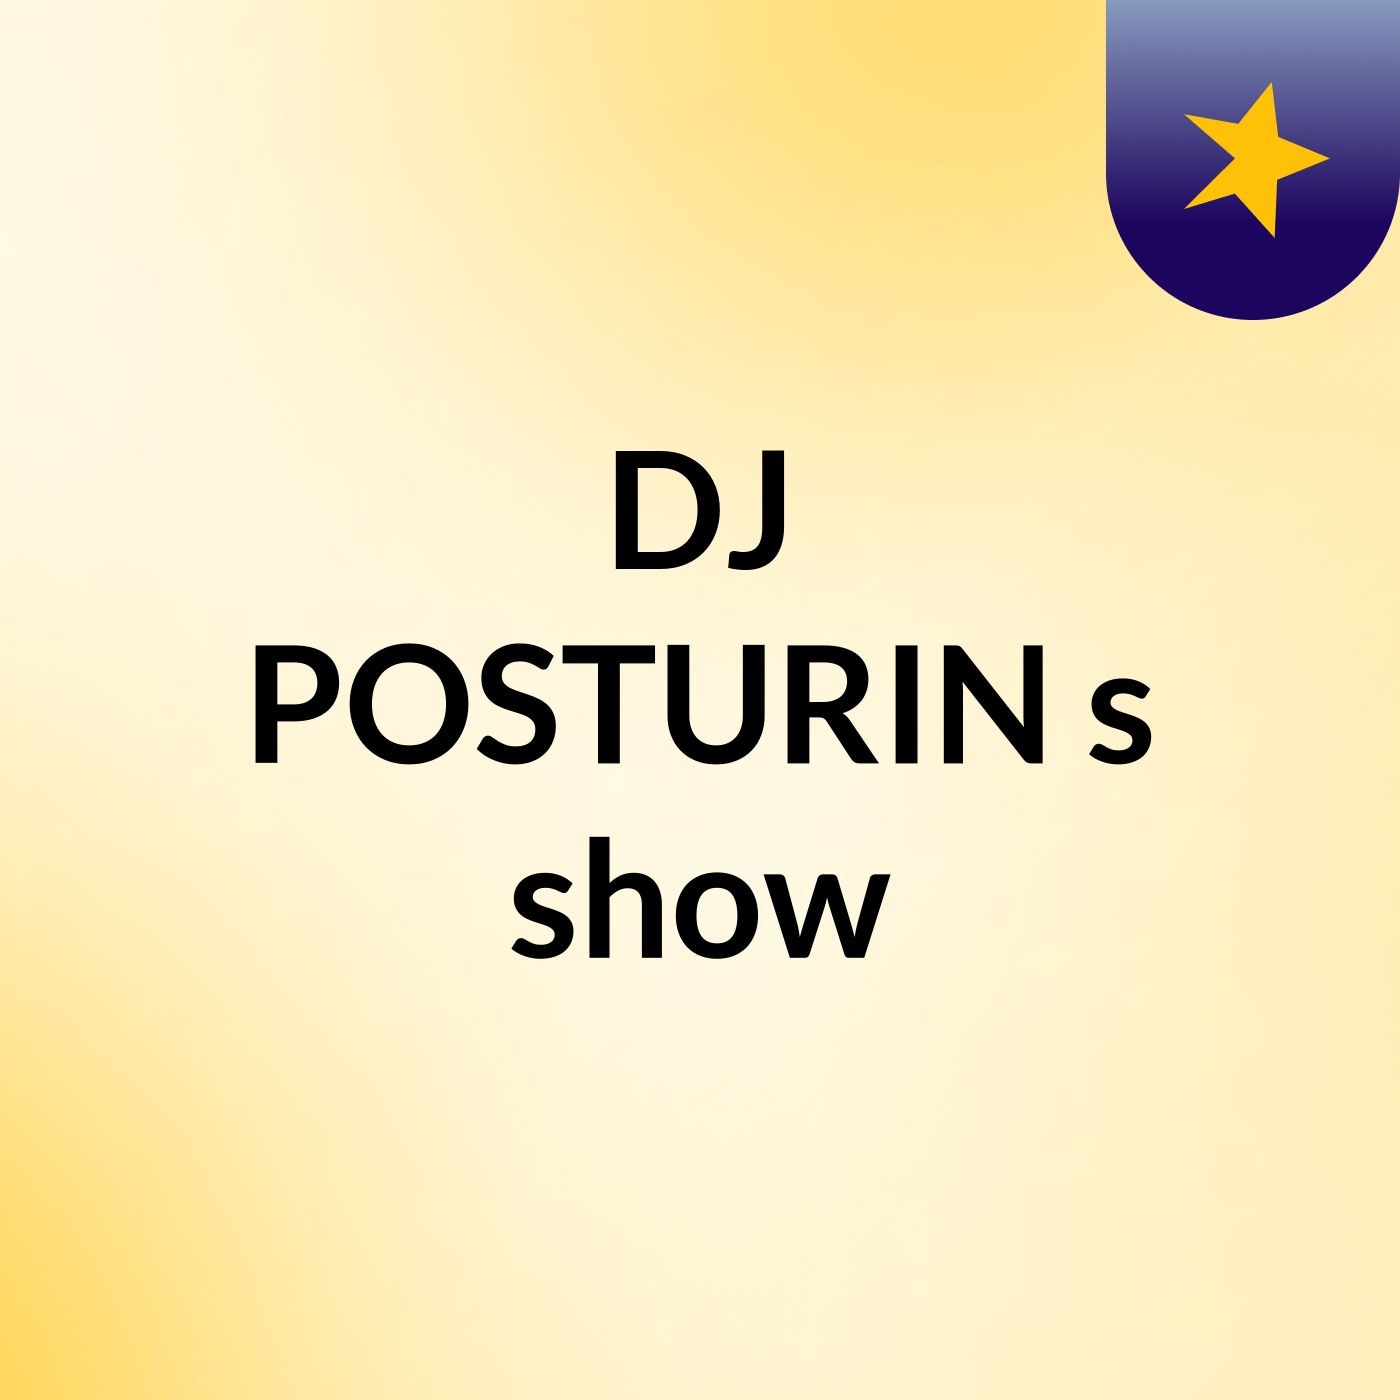 DJ POSTURIN's show